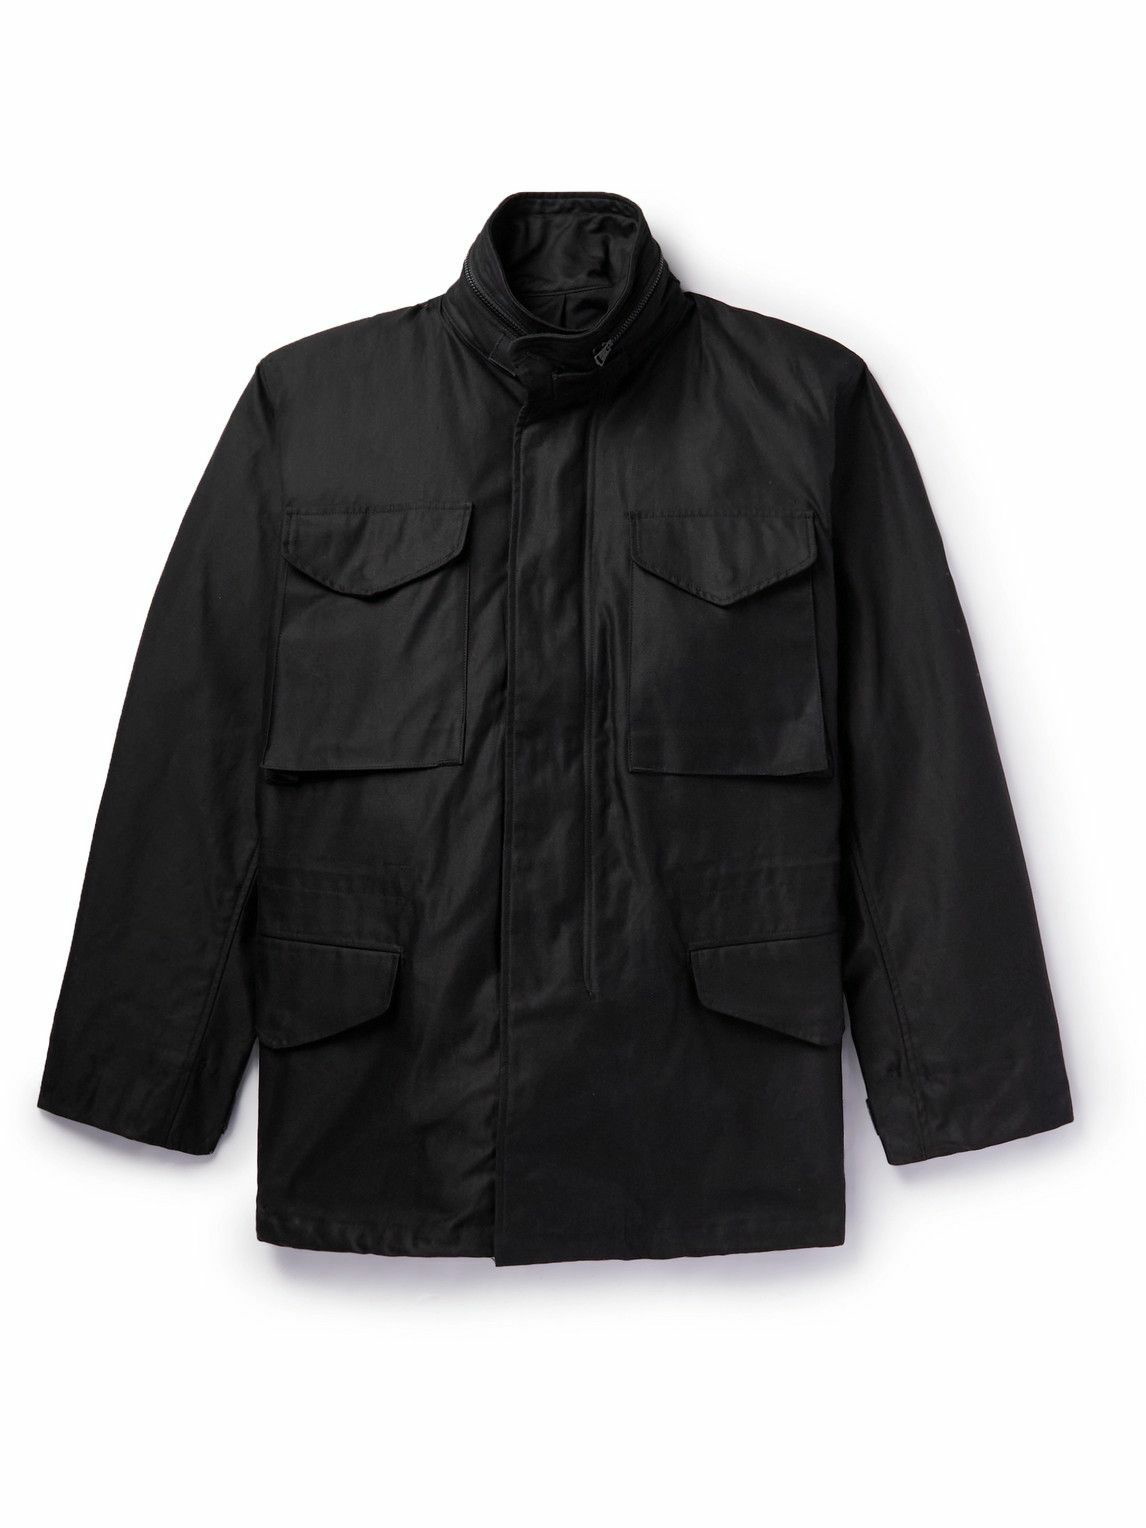 OrSlow - M65 Cotton-Twill Field Jacket - Black orSlow